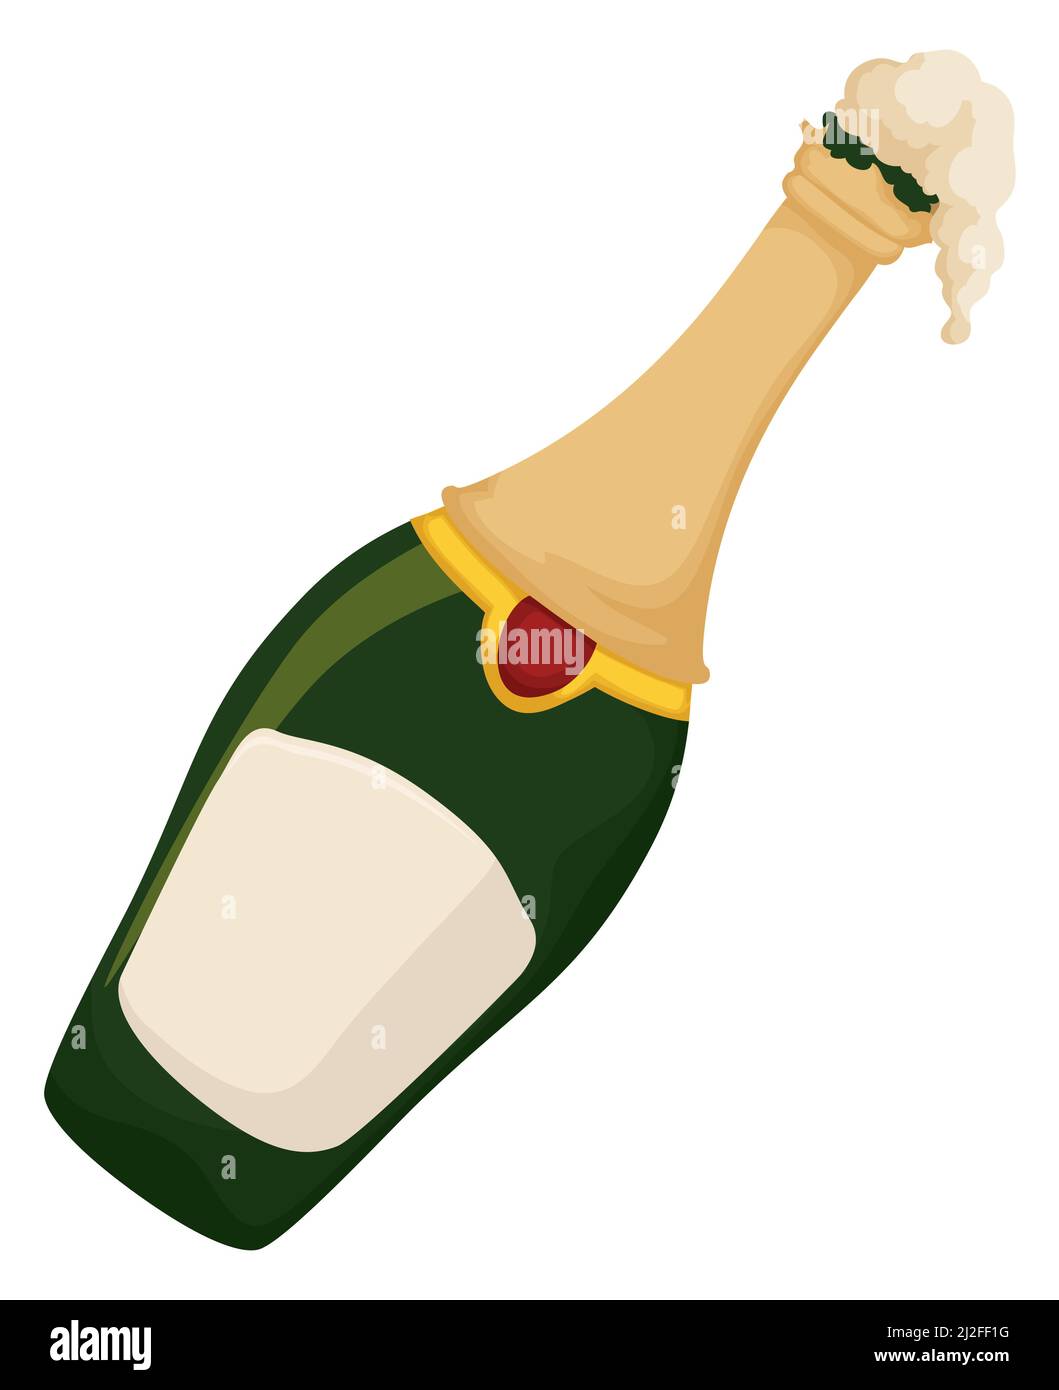 Une délicieuse bouteille de champagne mousseuse et penchée dans un style de dessin animé, prête à être ravie lors d'événements spéciaux. Illustration de Vecteur